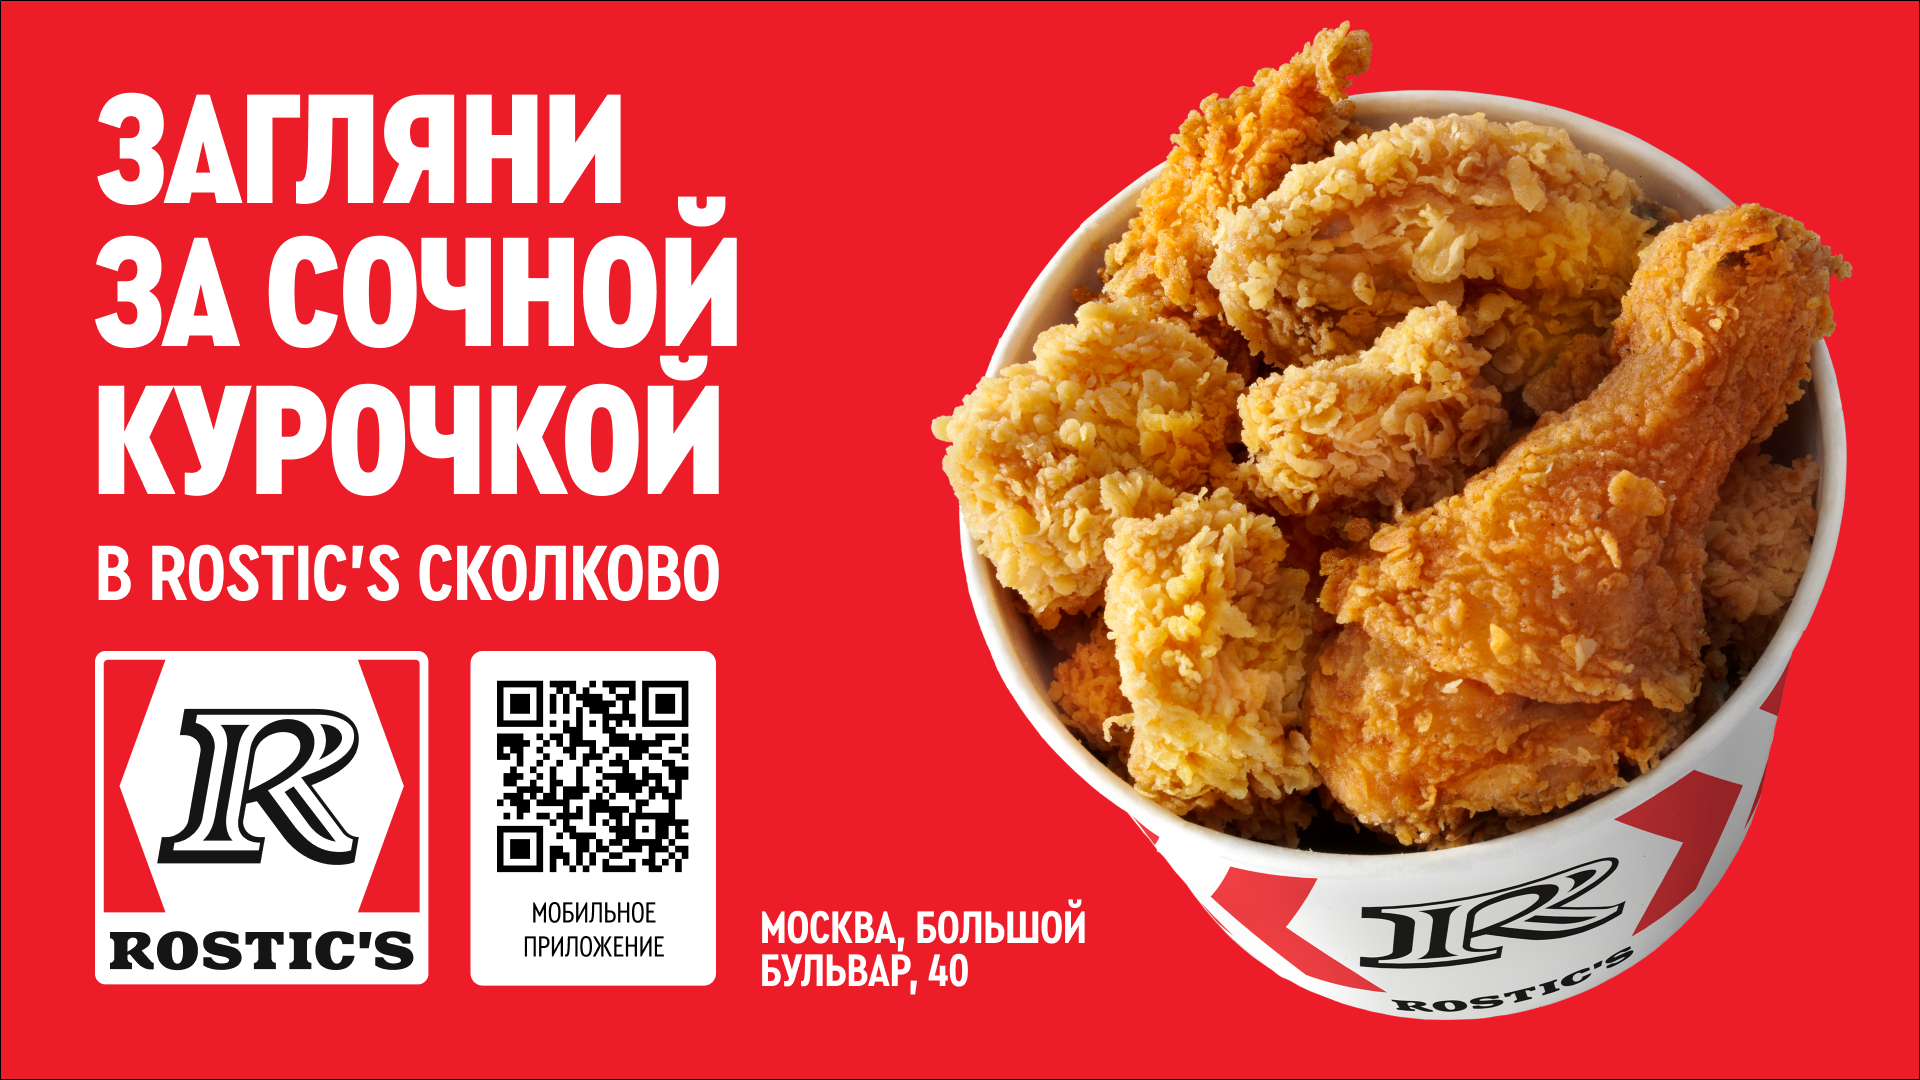 ROSTIC’S – сеть предприятий быстрого обслуживания в России, специализирующаяся на продуктах из курицы.